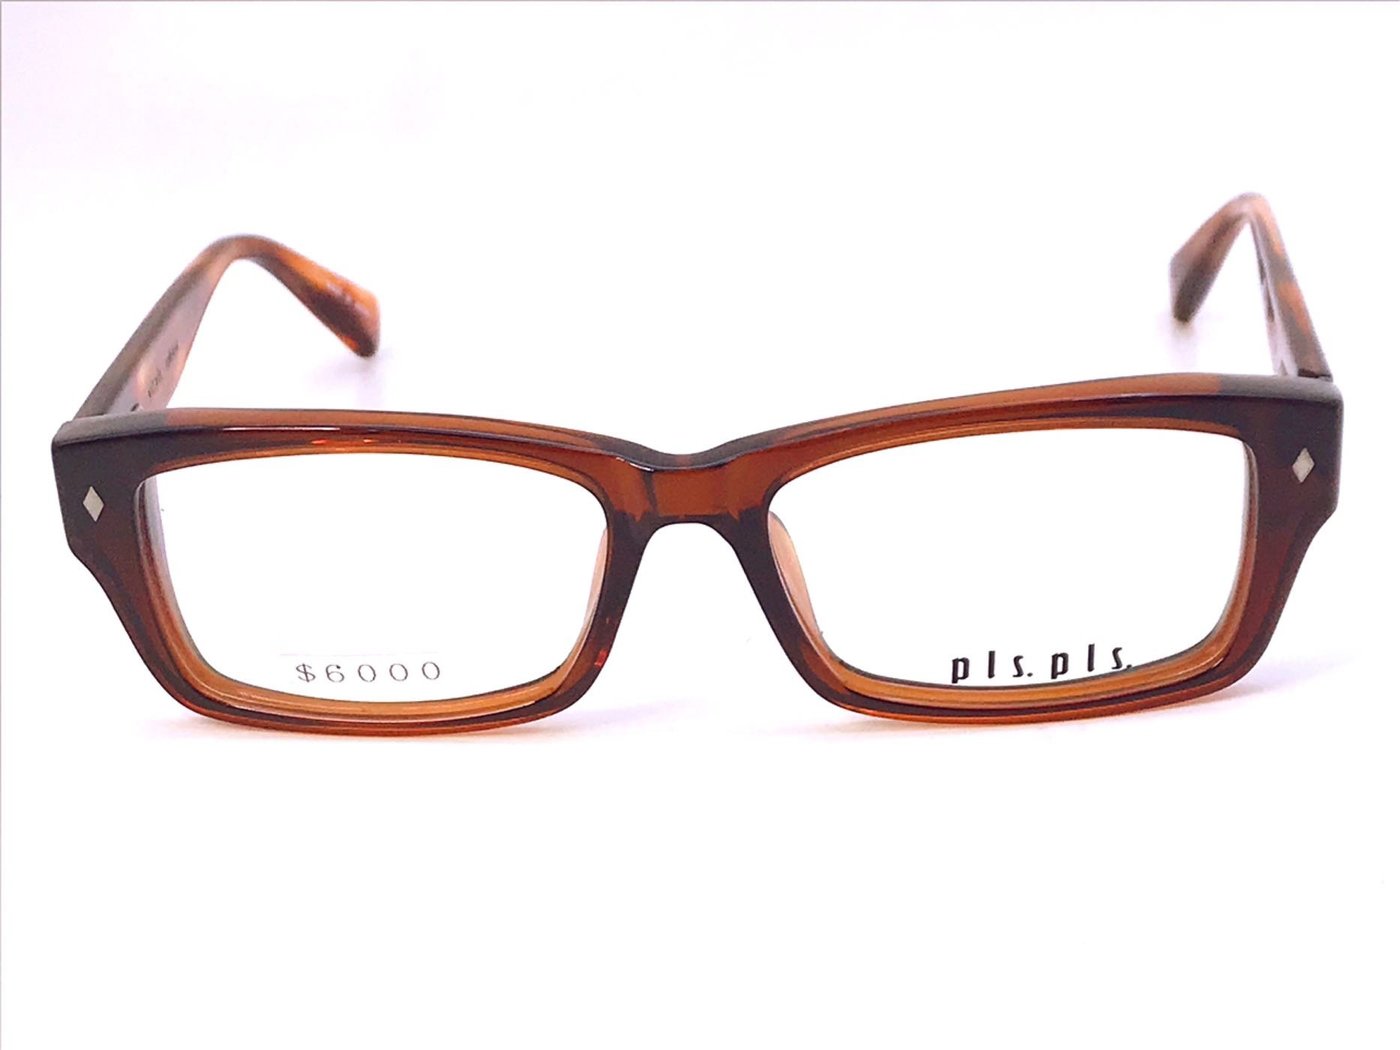 純正賽璐珞框只要$3600】全新真品PLS.PLS日本製手工眼鏡賽璐珞 